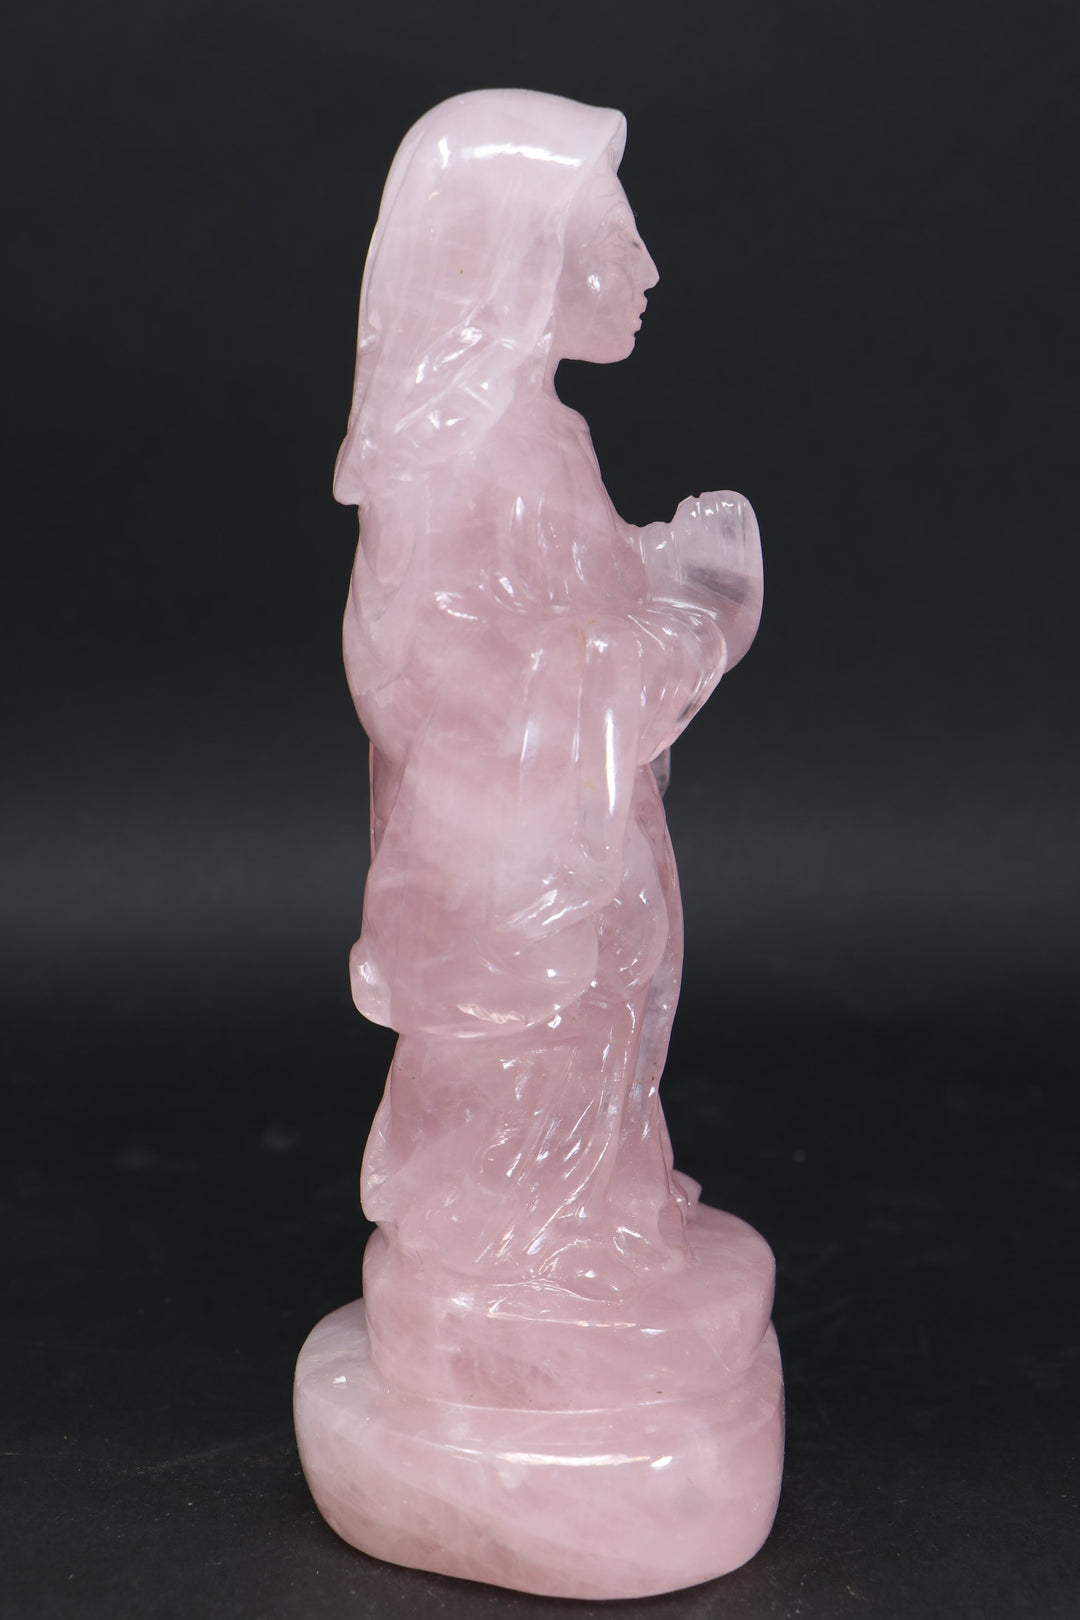 Rose Quartz Mother Mary Statue TU1606